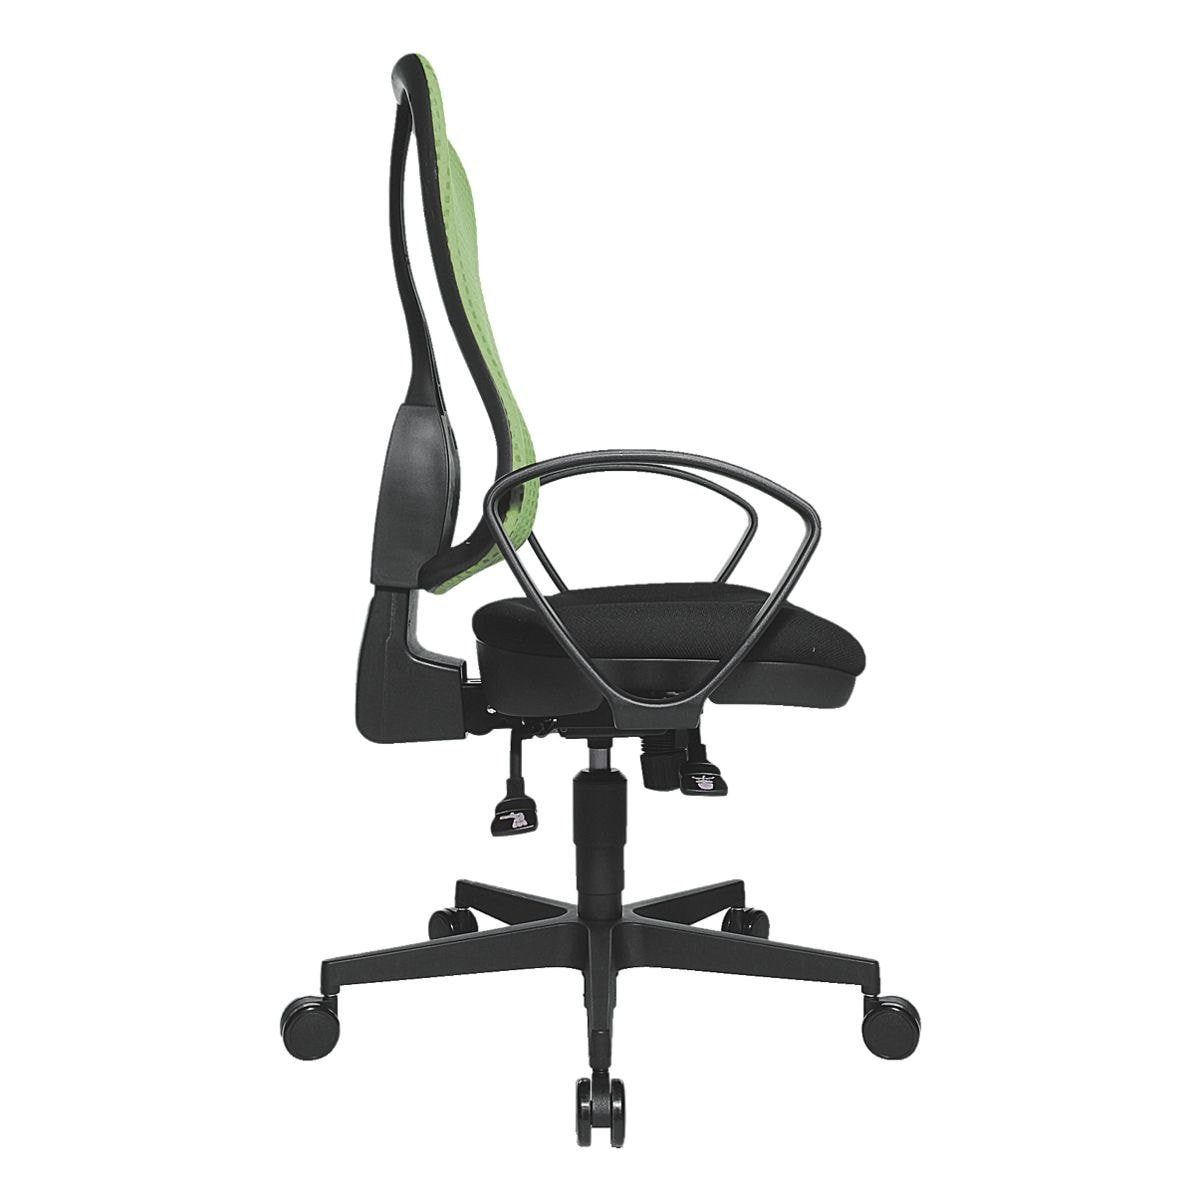 Muldensitz, Punkt-Synchronmechanik, Netzrückenlehne, TOPSTAR Schreibtischstuhl grün (ohne SY, Headpoint Armlehnen)